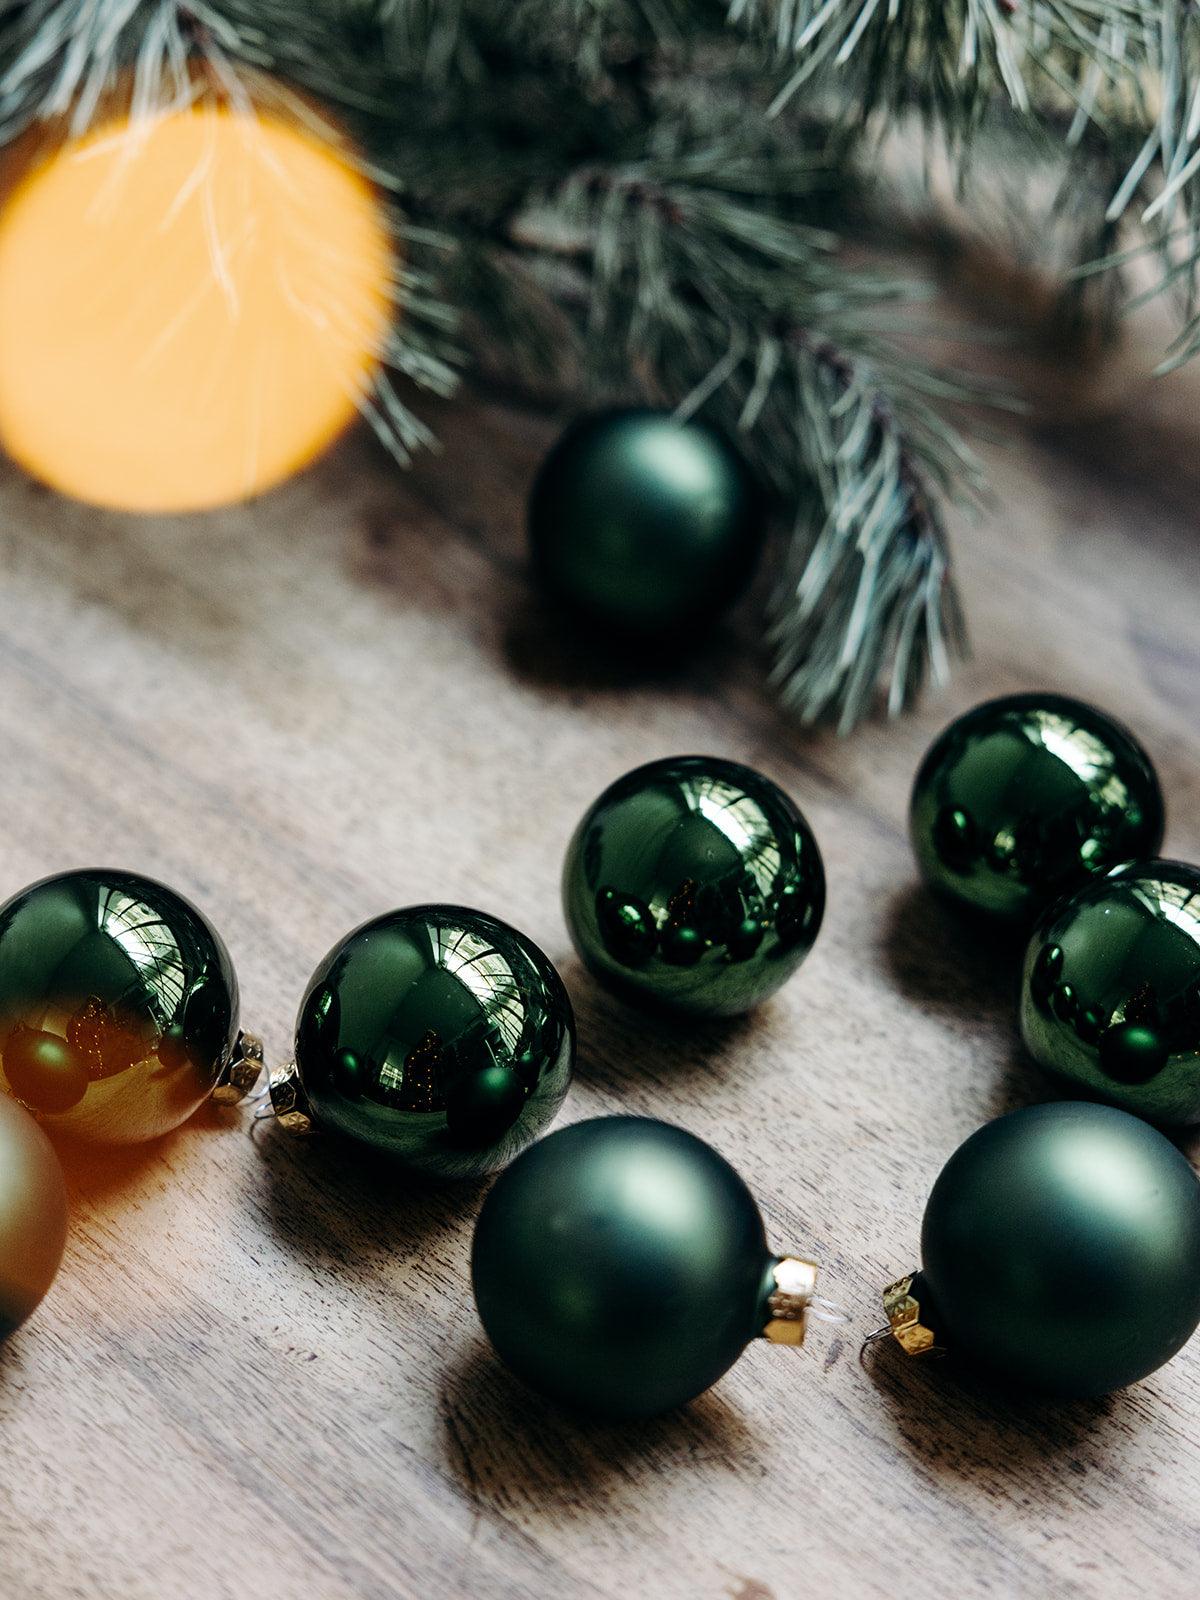 Irène, le coffret de 20 boules de Noël vertes - Debongout